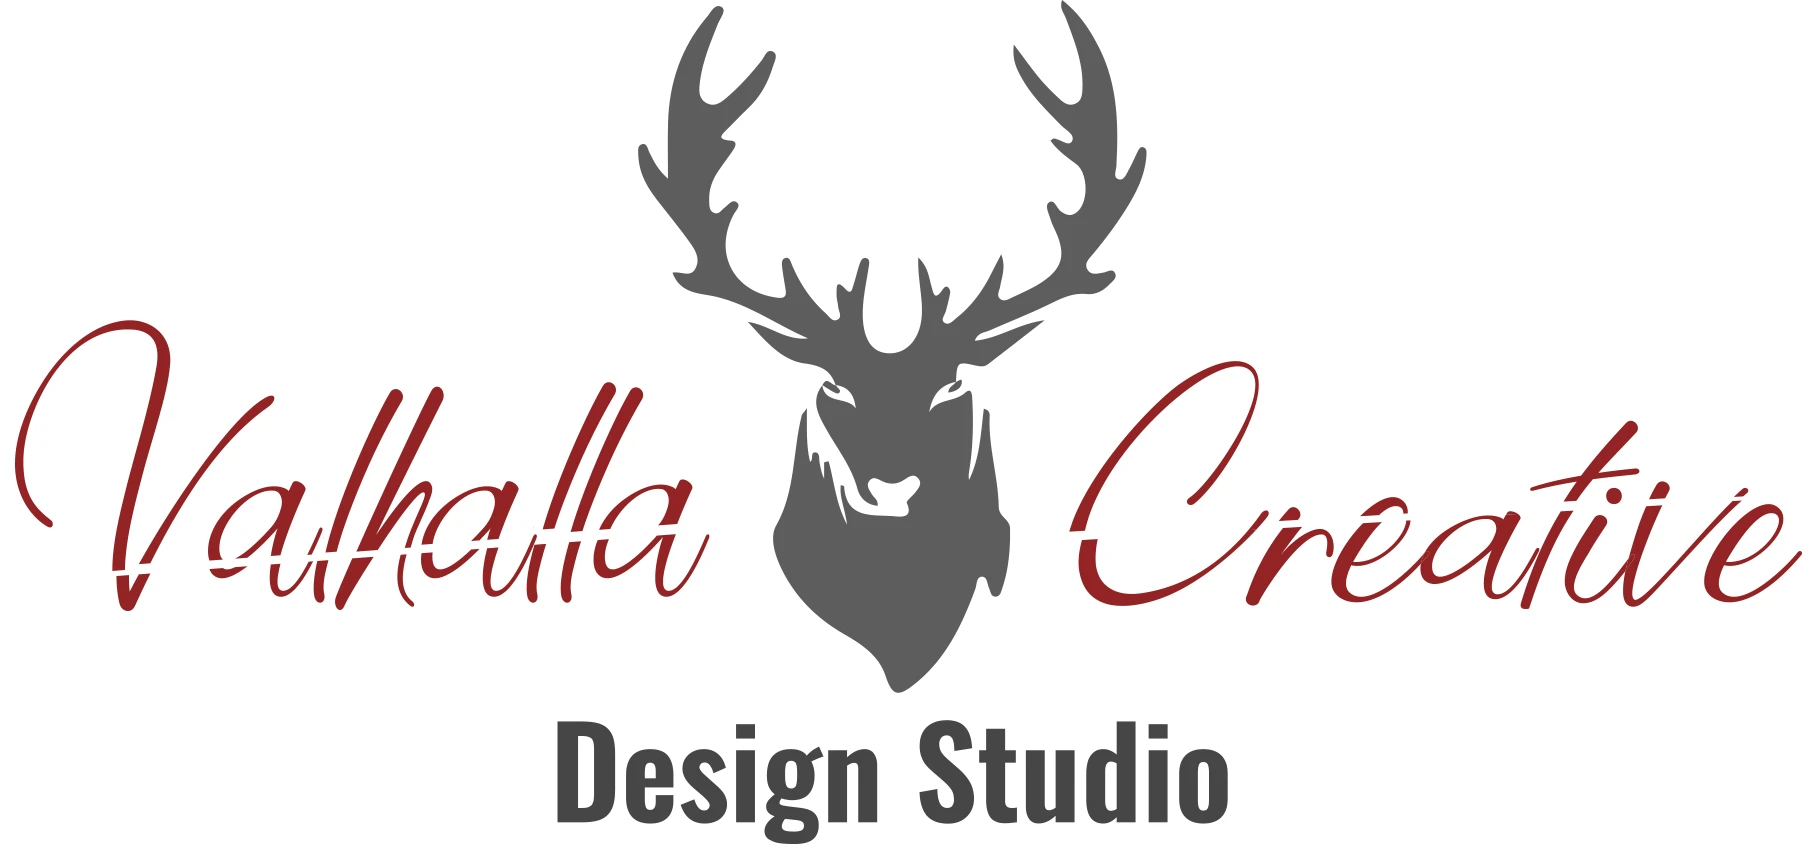 Valhalla-Creative-Design-Studio